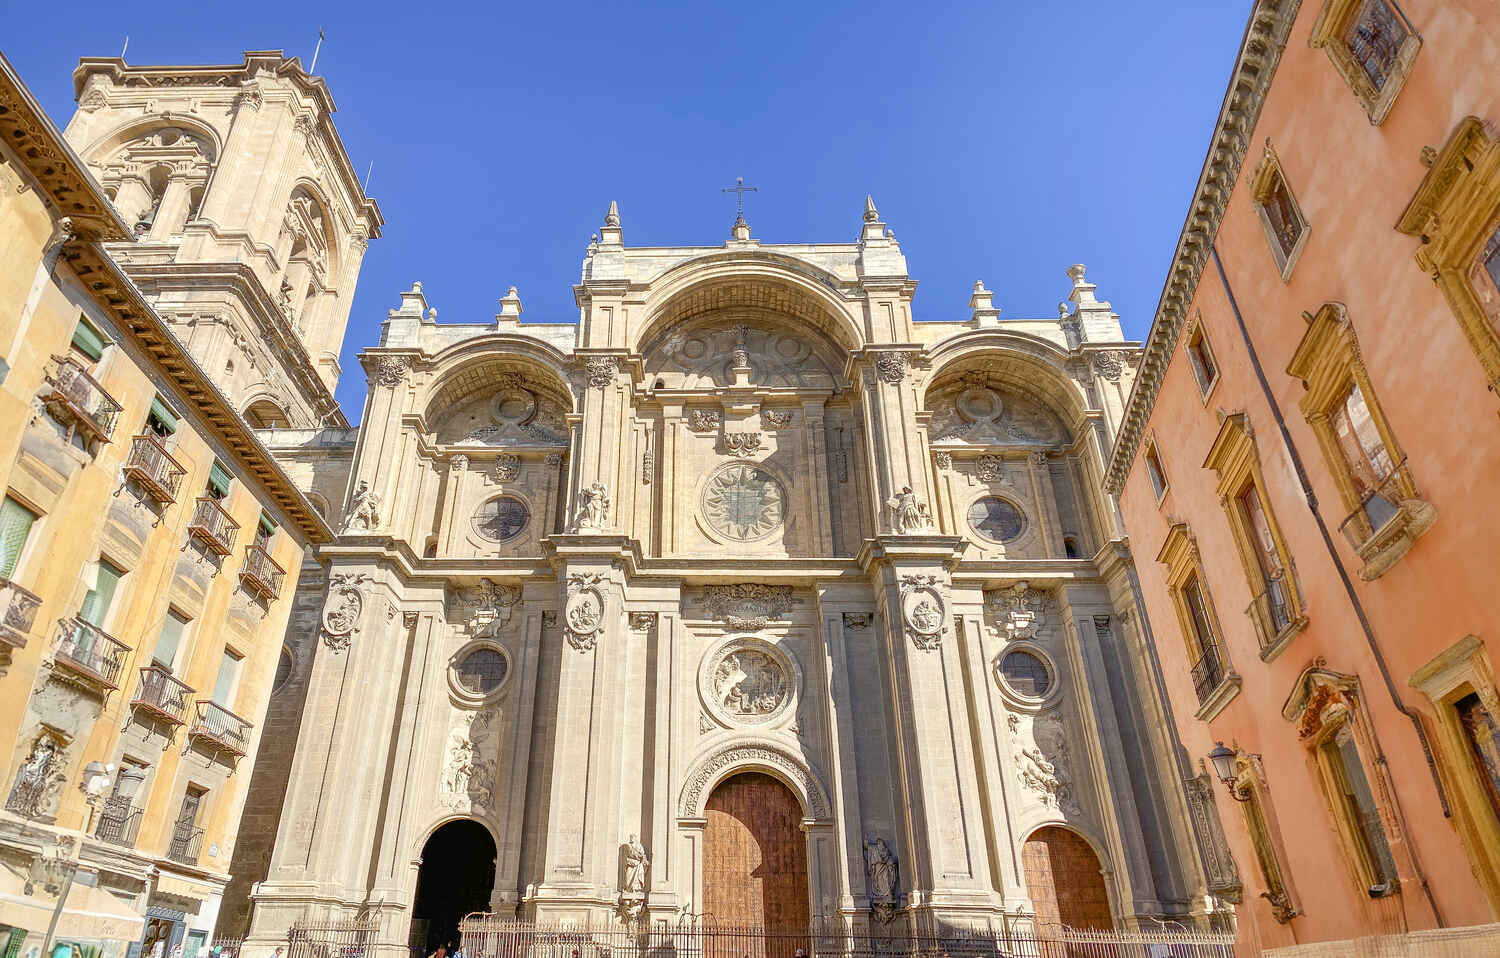 Facade of Granada Cathedral